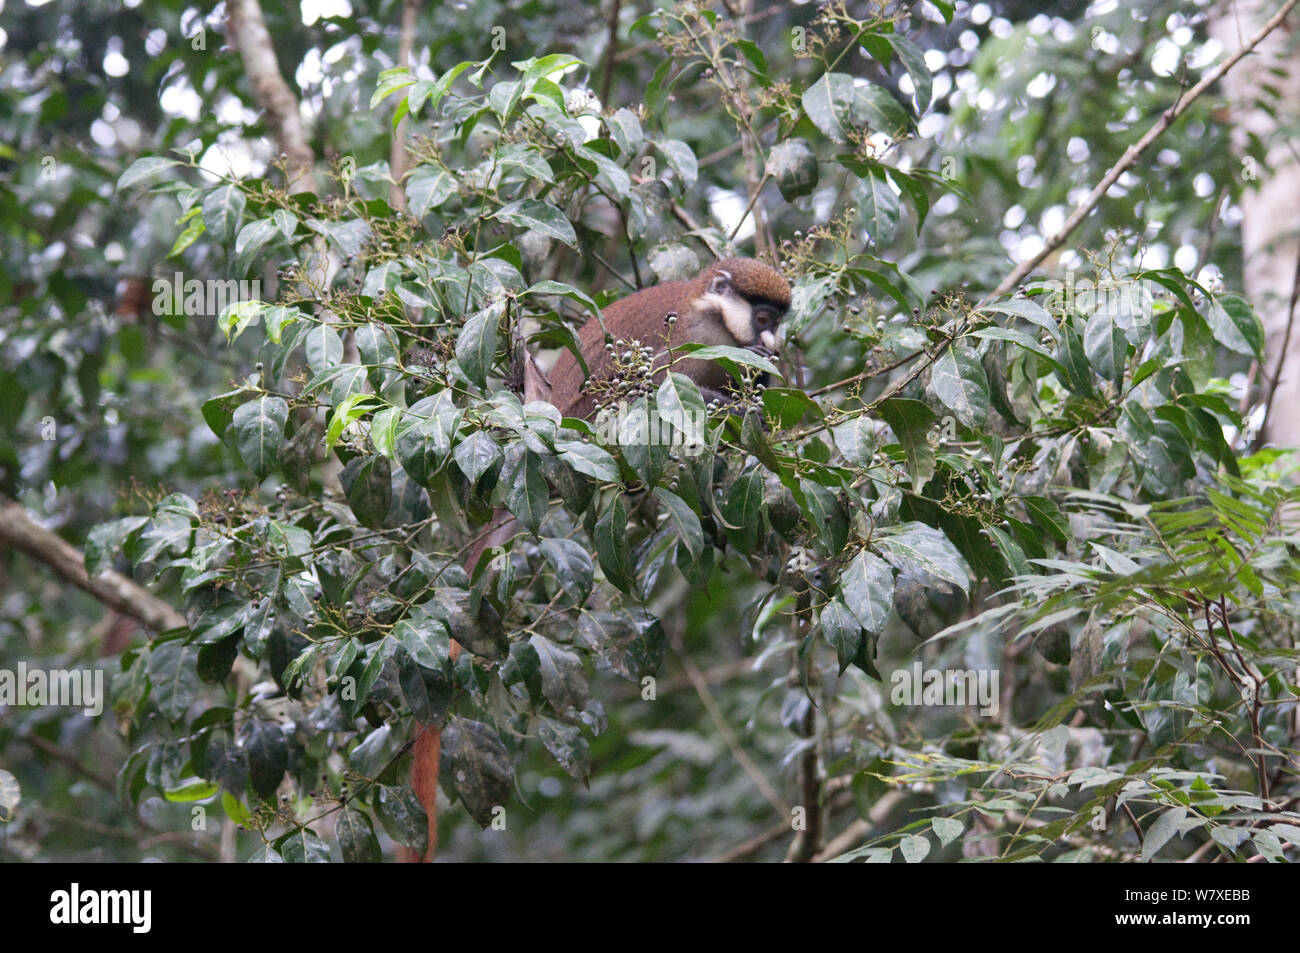 Cerf rouge guénon (Cercopithecus ascanius) alimentation dans des arbres à fruits, la Réserve de faune à okapis d'Epulu, UNESCO World Heritage Site, forêt d'Ituri, République démocratique du Congo. Banque D'Images